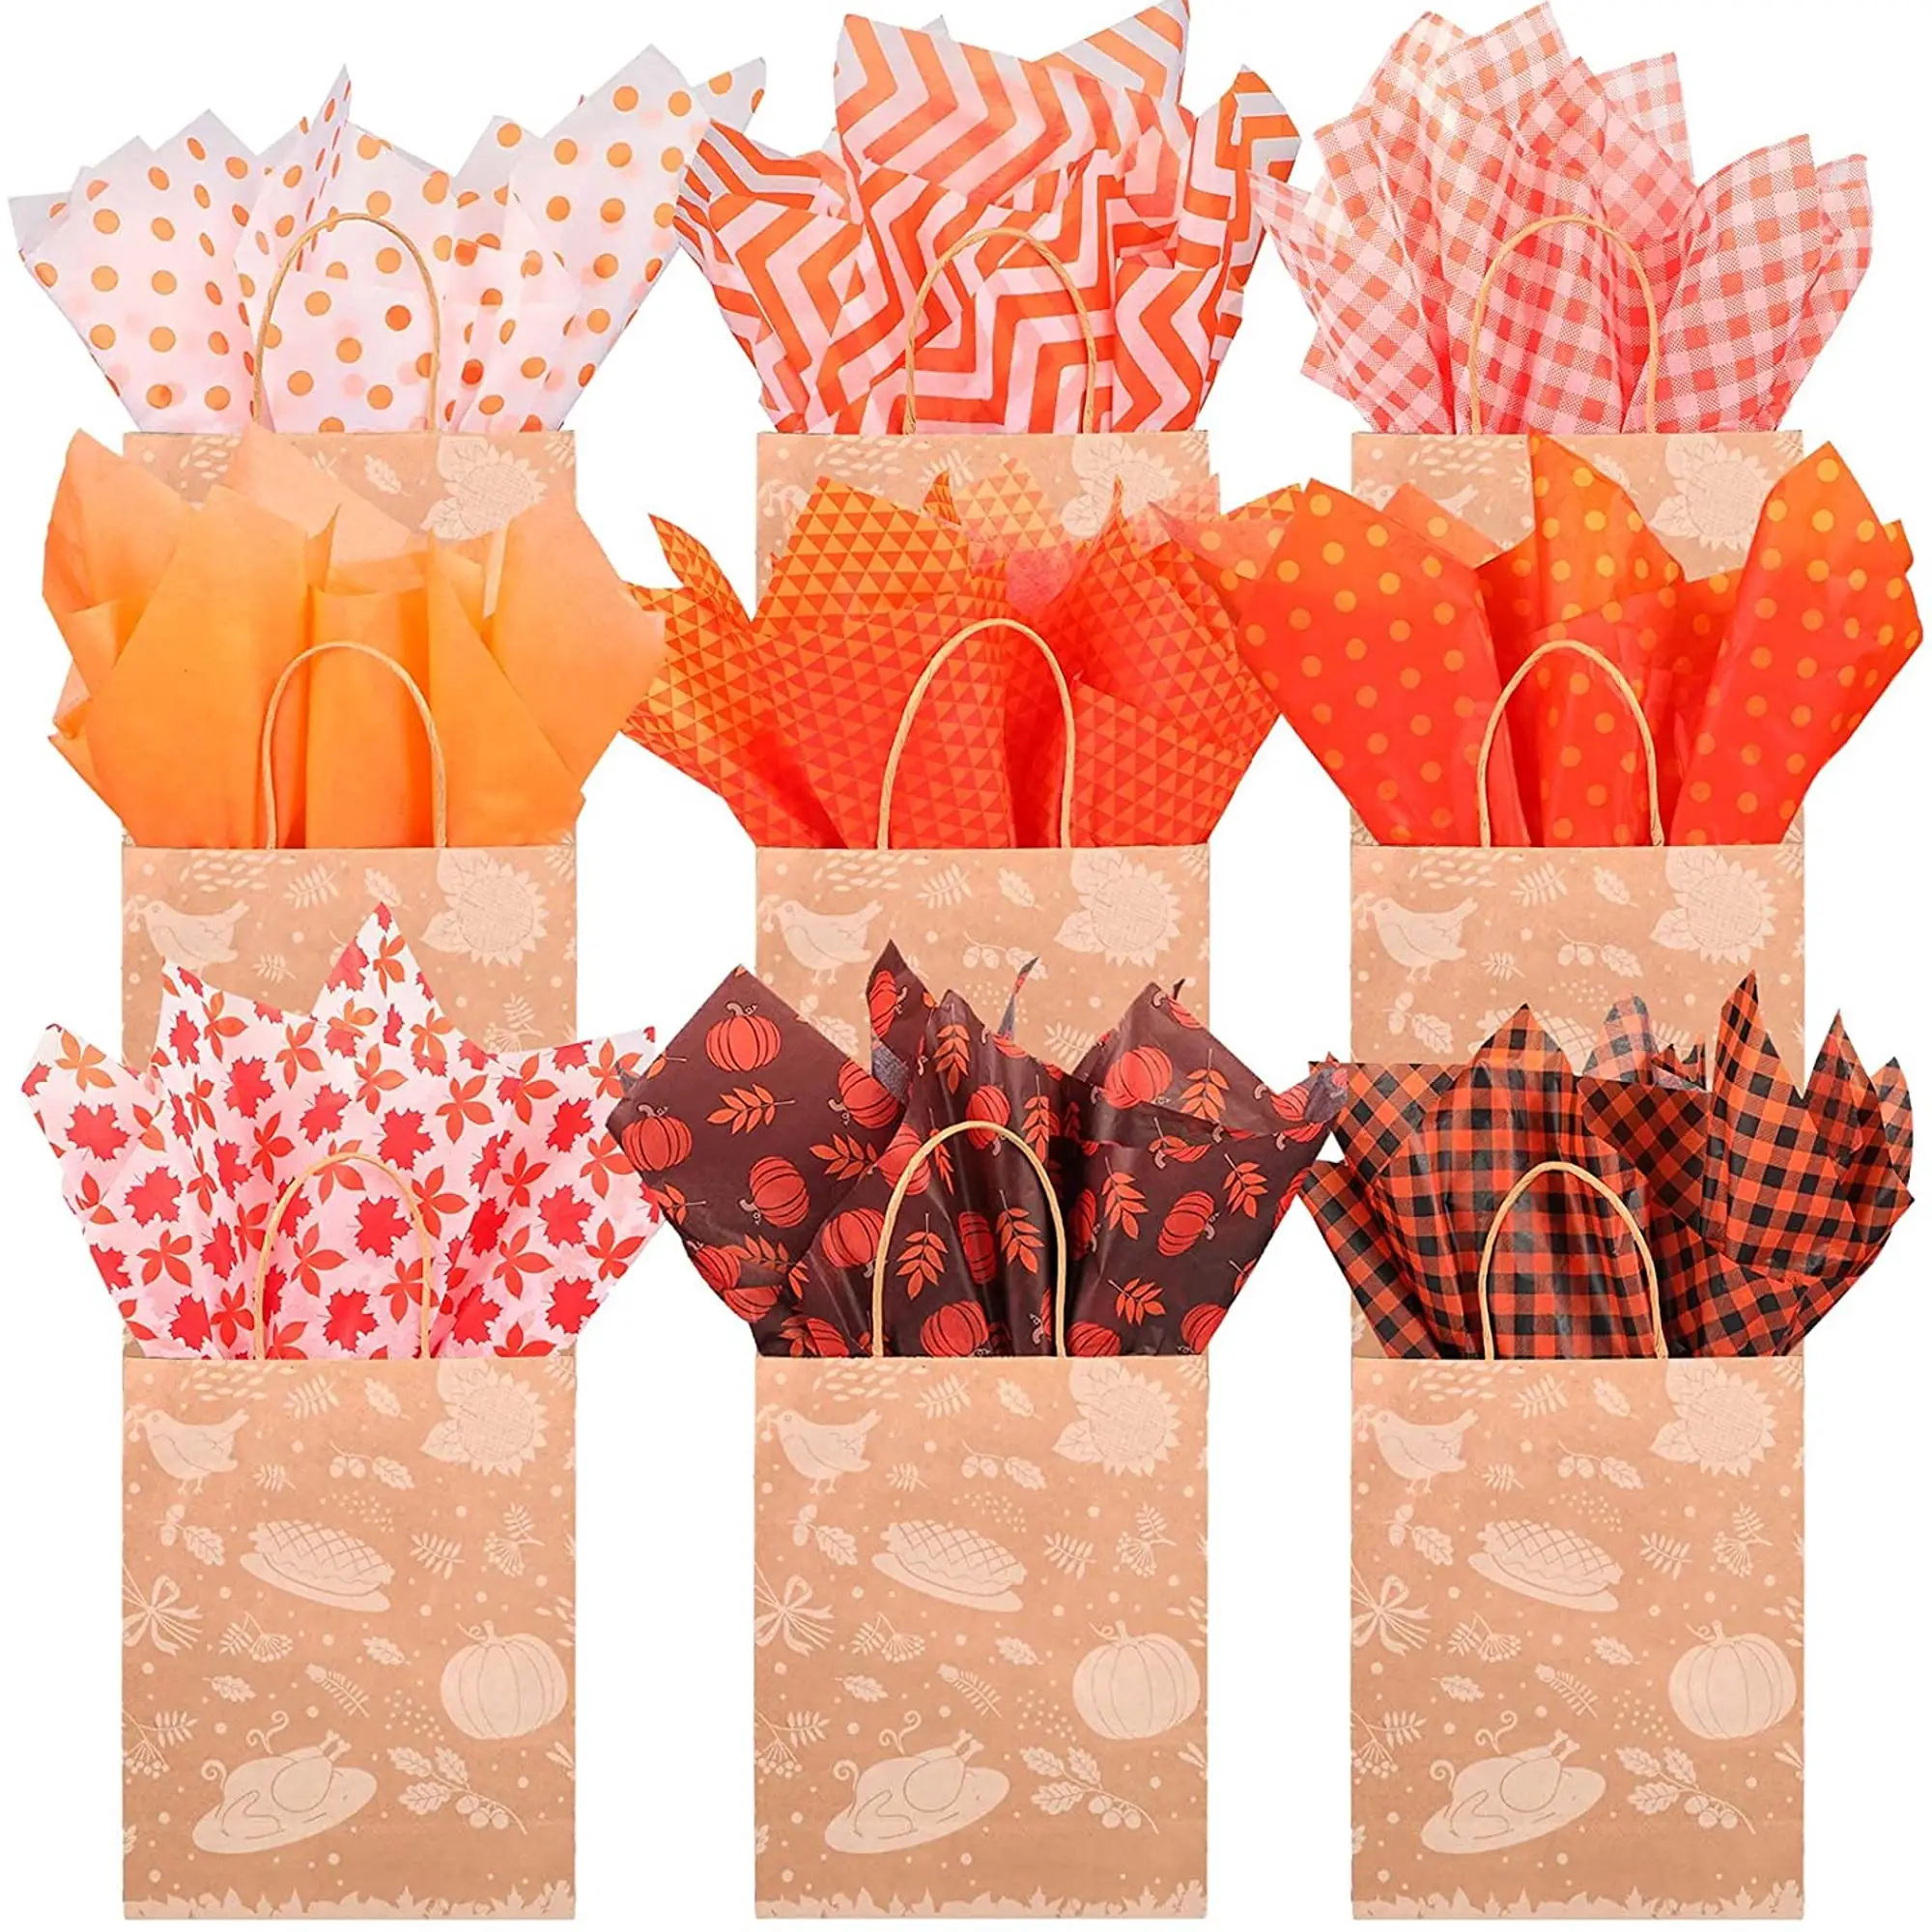 Papel do tecido de ação de graças, papel do tecido de laranja marrom para o presente, folhas de bordo